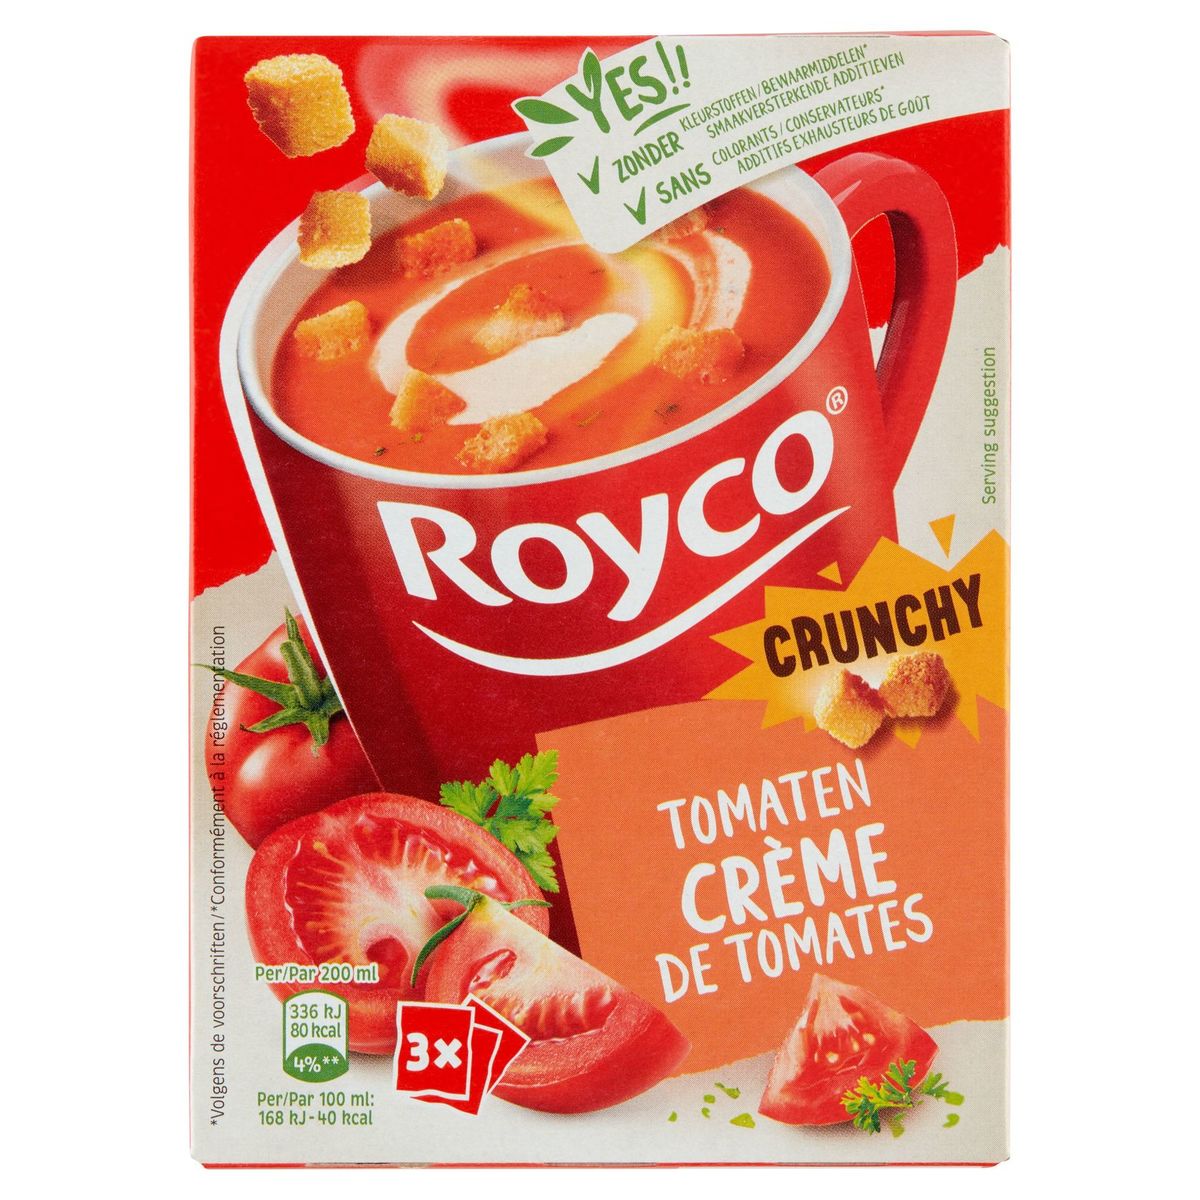 Royco Crunchy Crème de Tomates 3 x 18.1 g